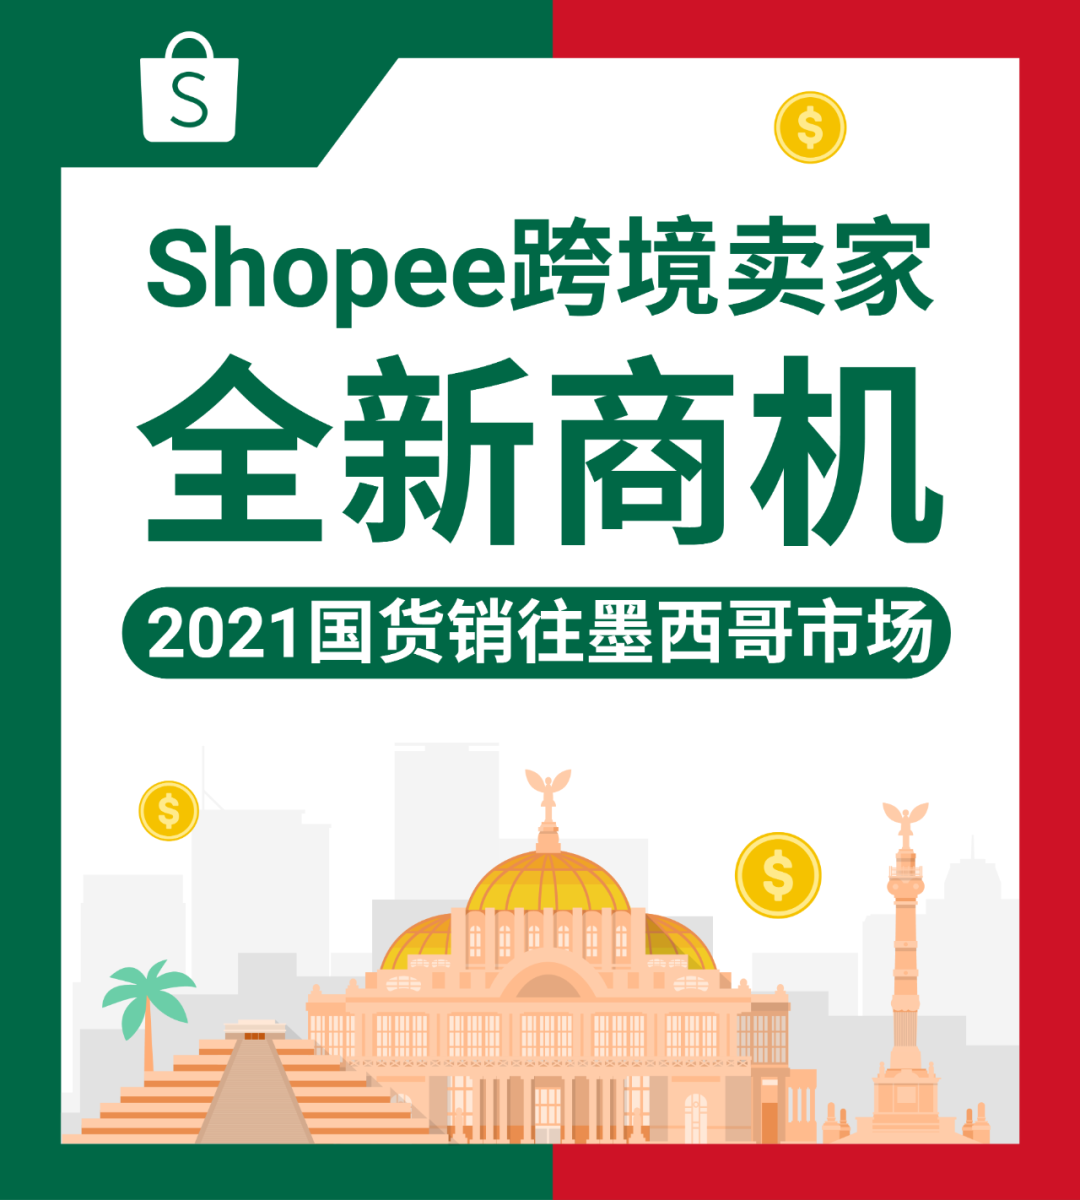 2021新商机: Shopee将国货带到墨西哥, 助跨境卖家增加销售机会